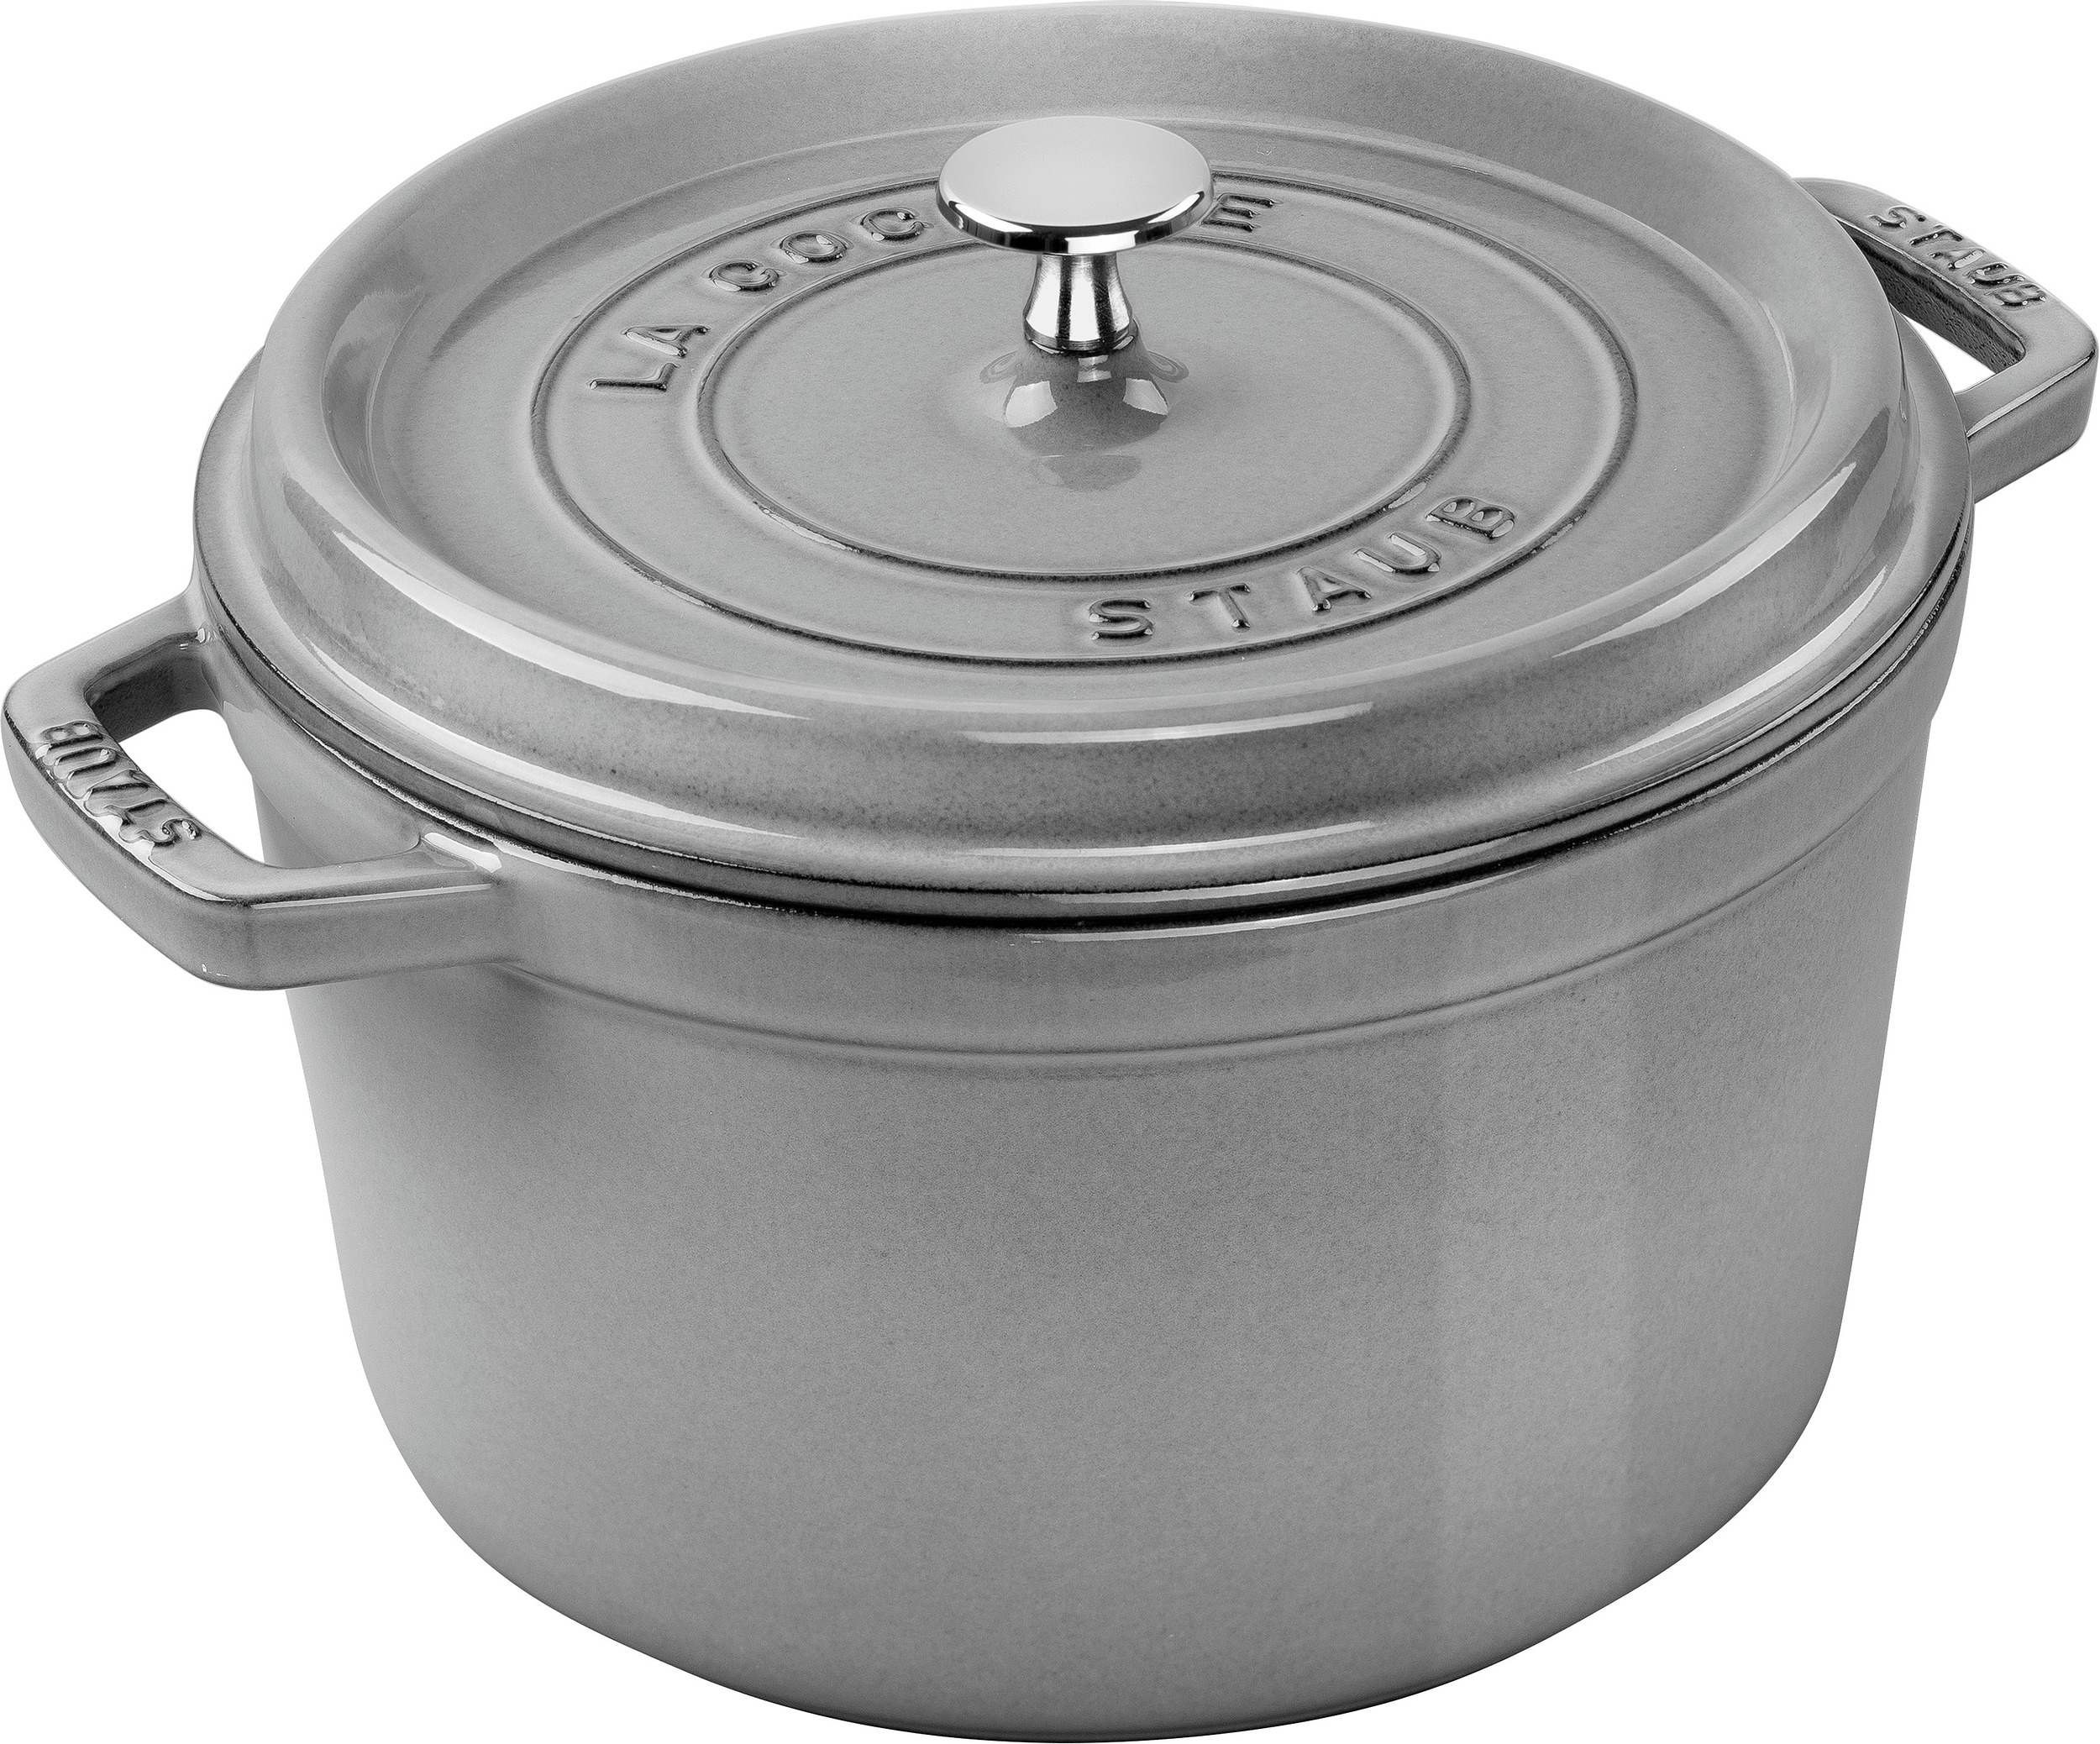 La Cocotte Cooking pot 4,8 l high cast iron - Staub 40502-291-0